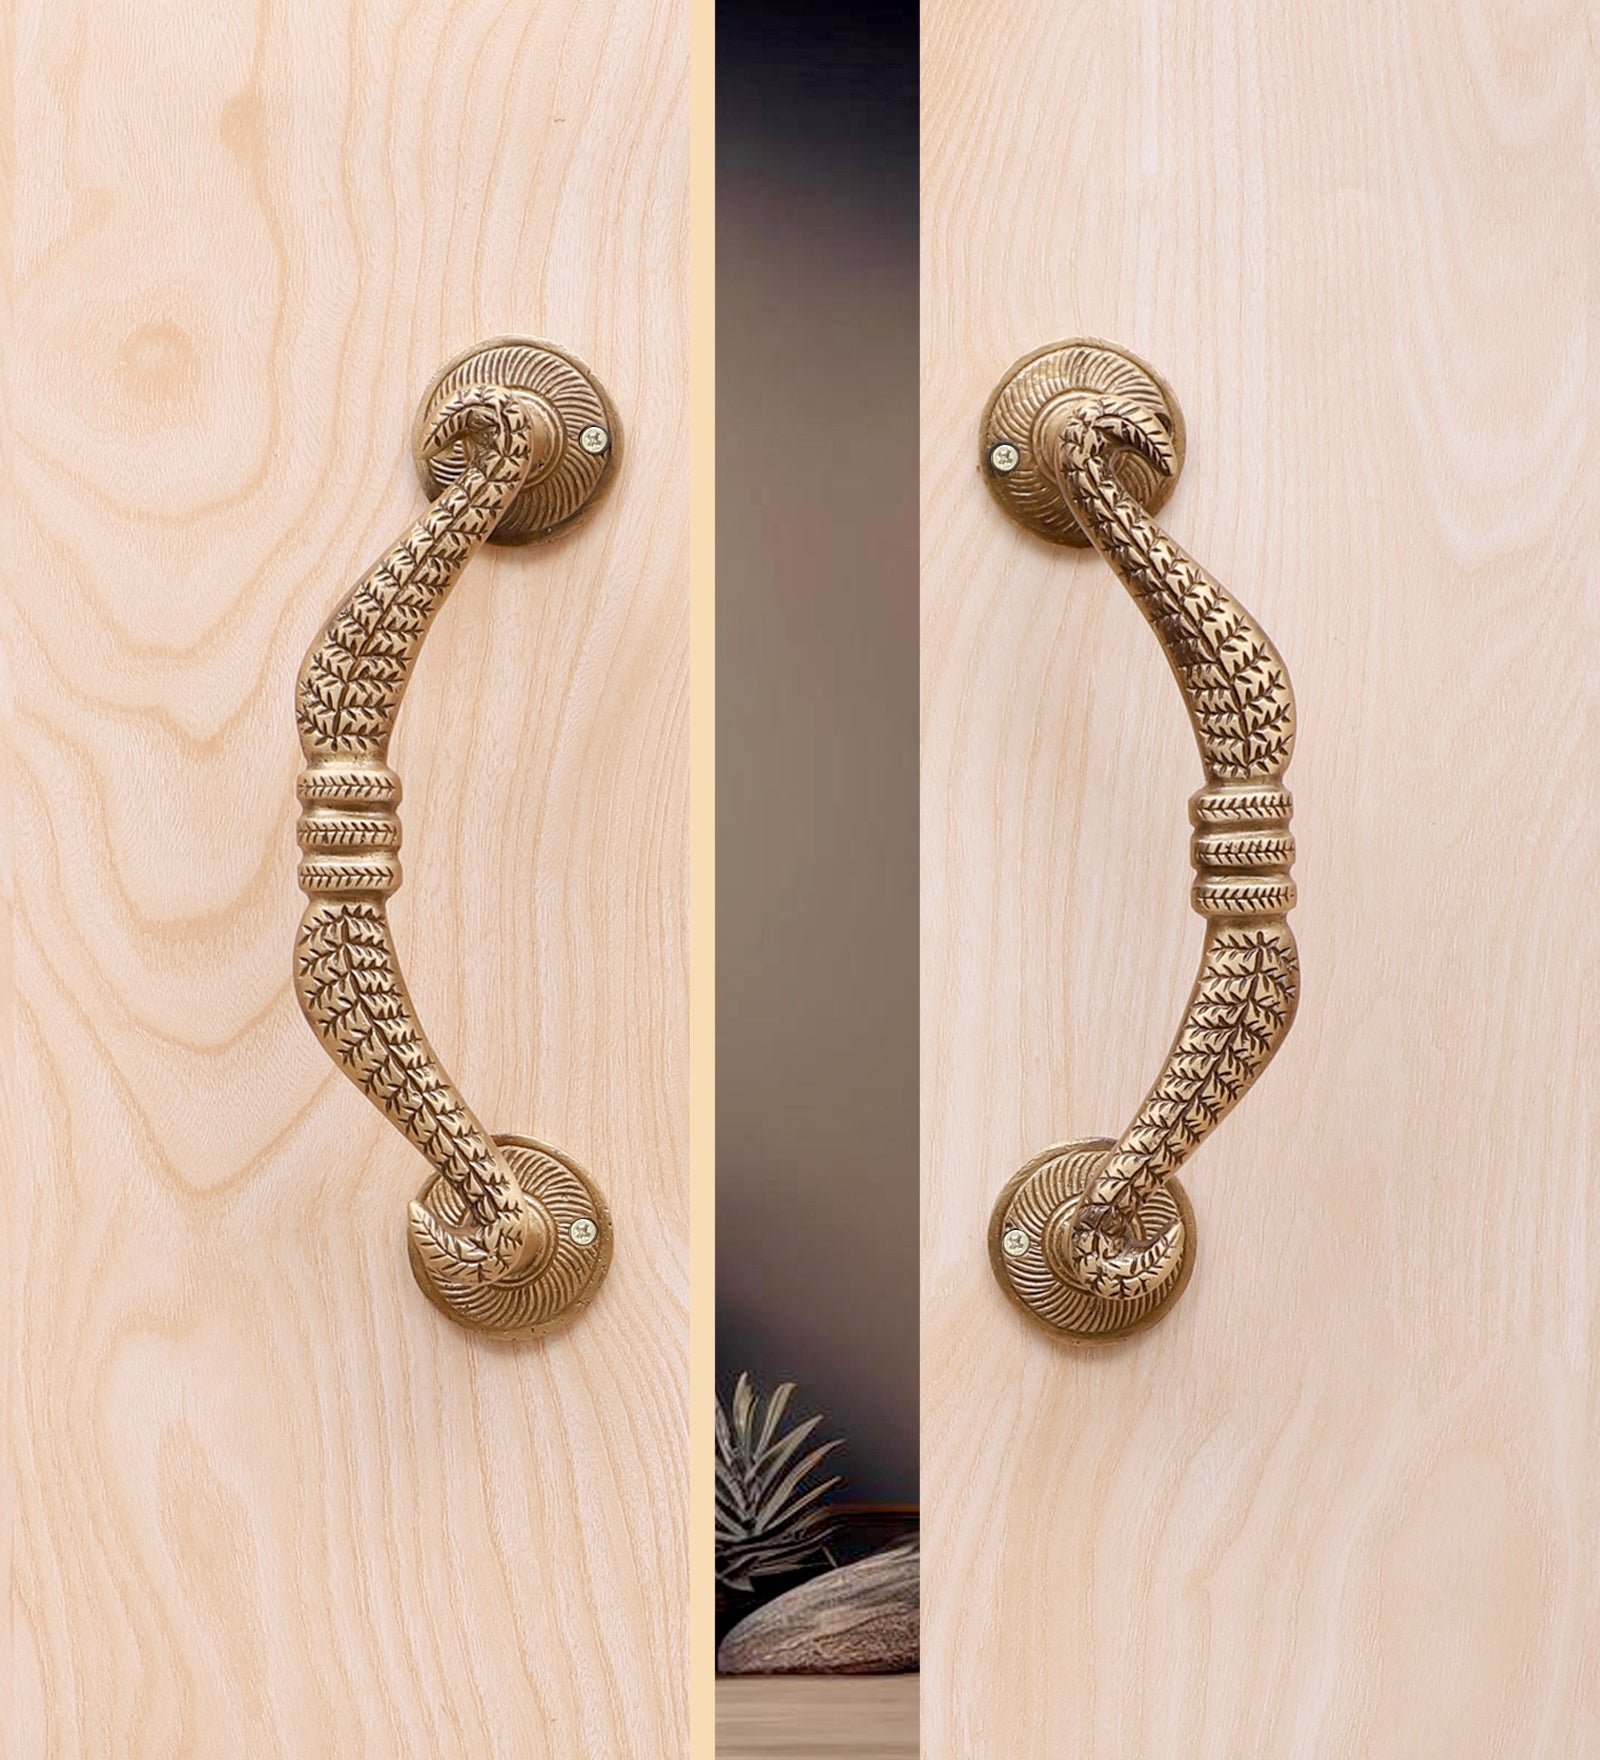 Bow Design Brass Door Handle Pair, Handles for Main Door, Brass Door Pulls